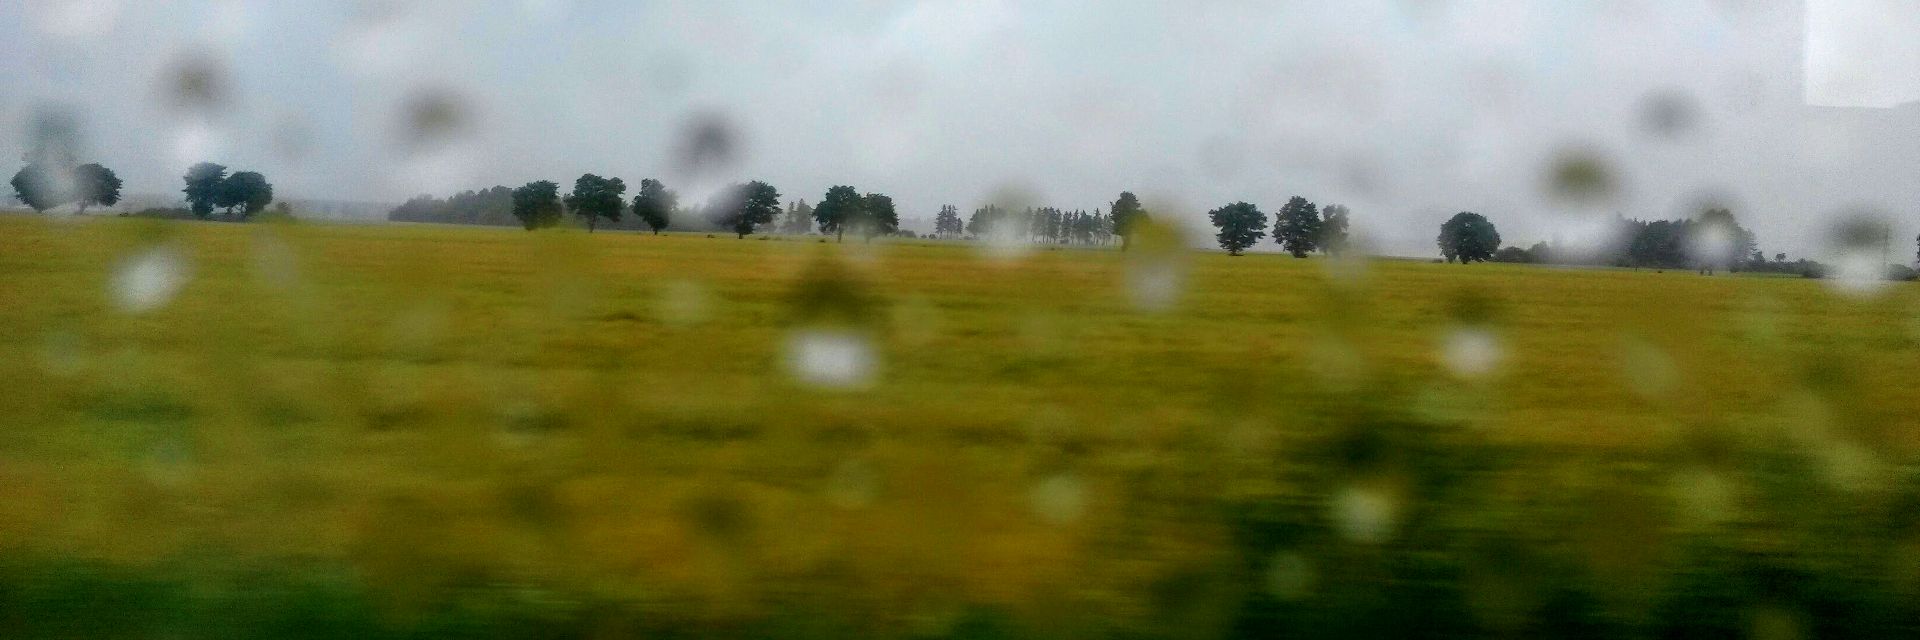 deszcz z pociągu